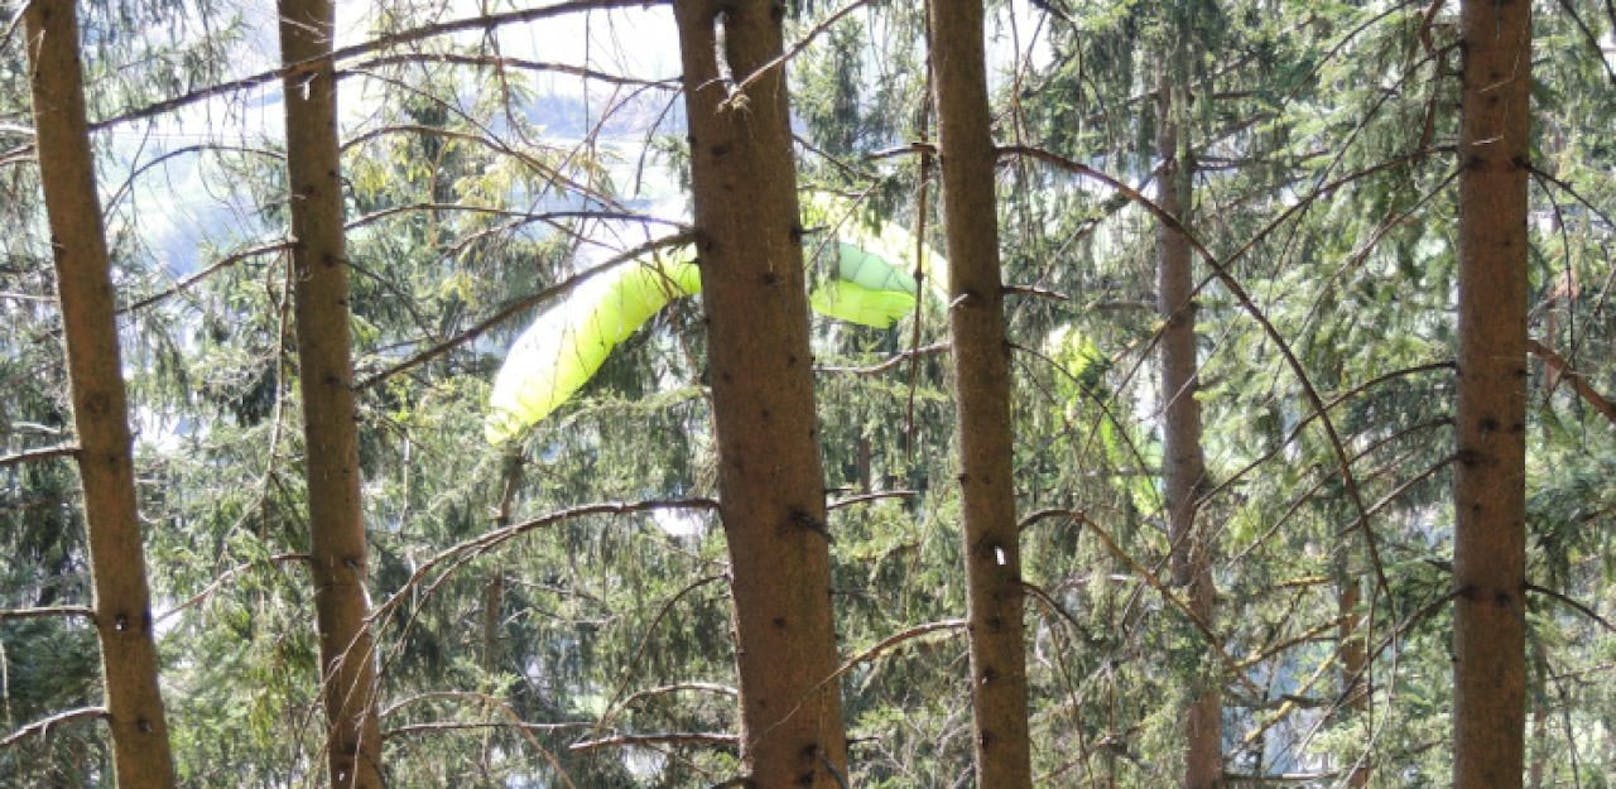 Paragleiter (44) hing 70 Minuten in Baum fest